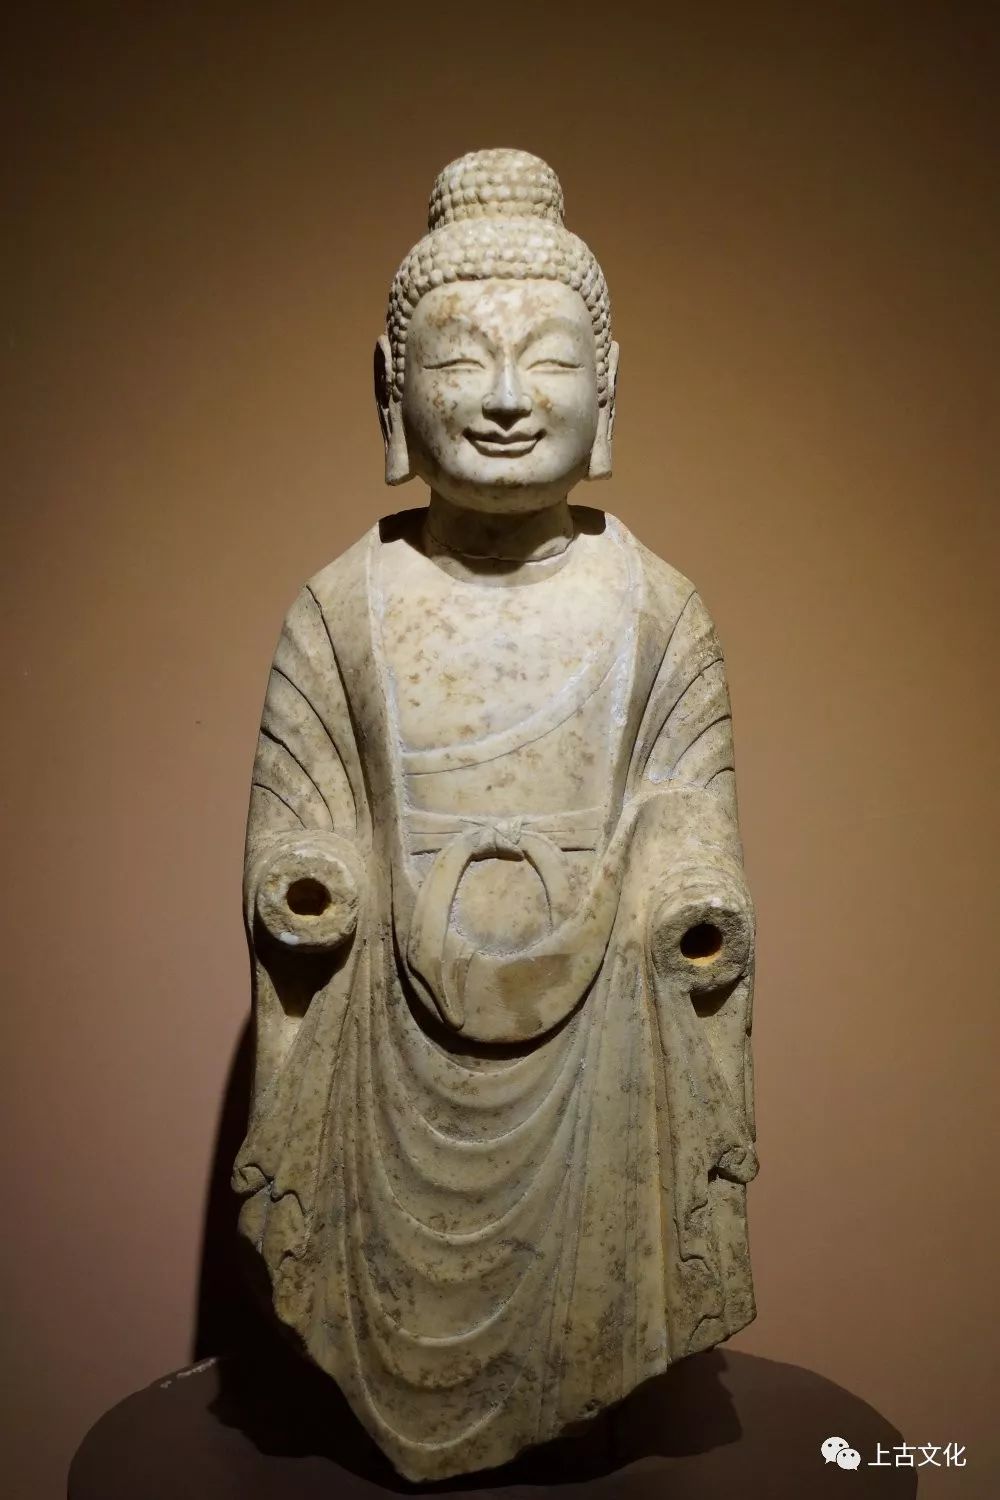 【馆藏】菩提树下的佛陀 —— 北齐石刻佛像赏析